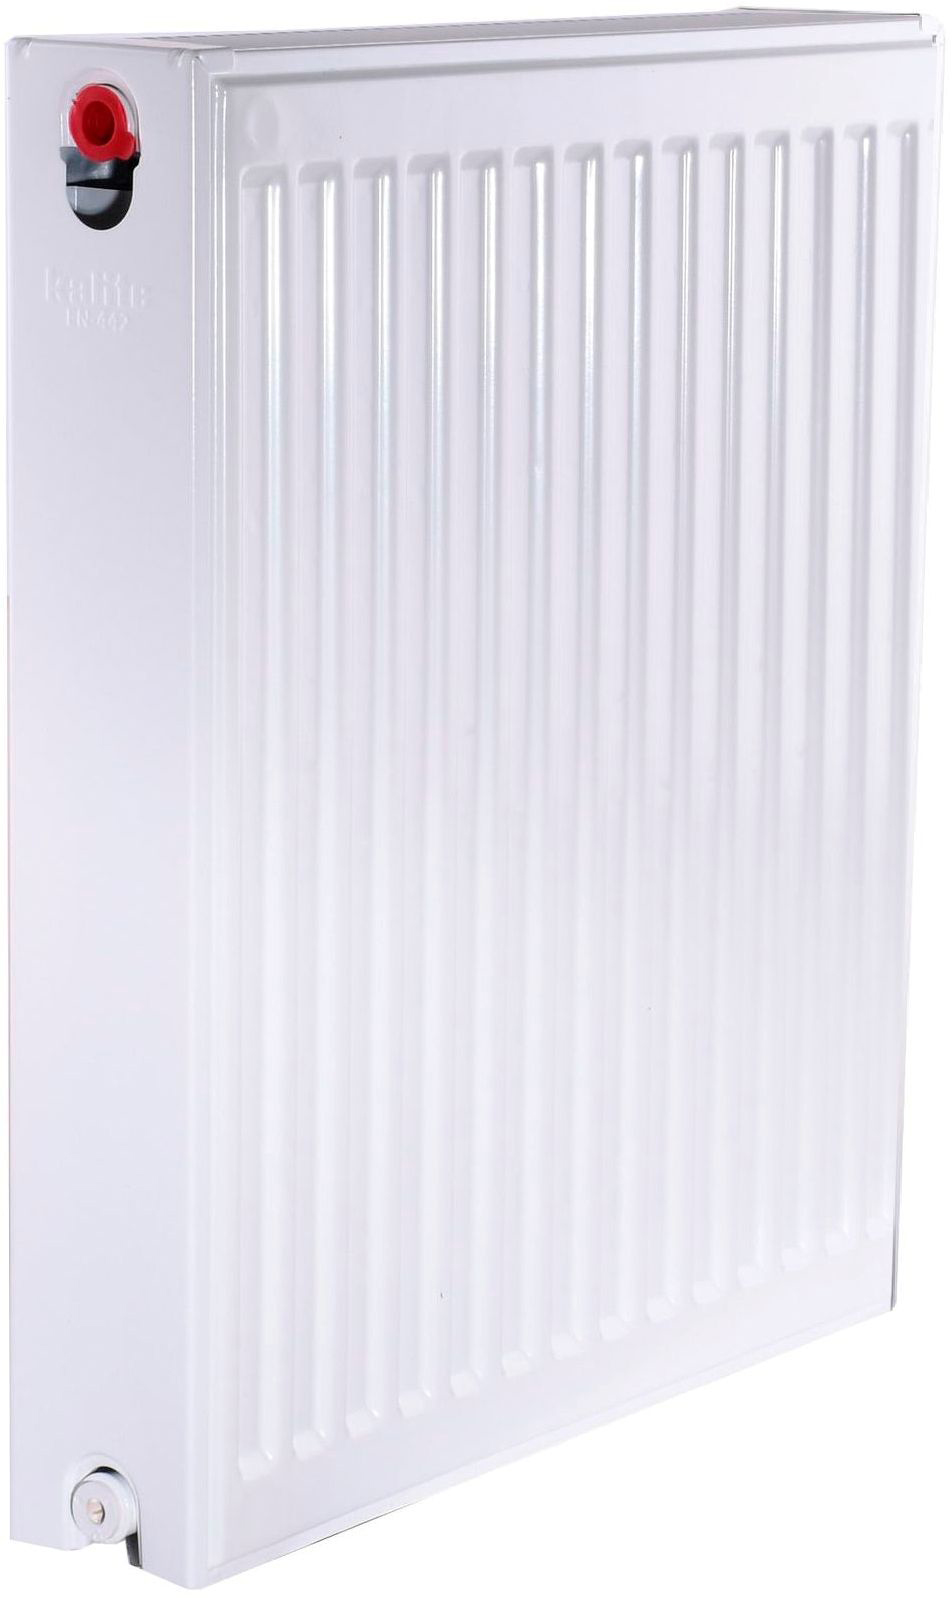 Радиатор для отопления Kalite 22 бок 600x500